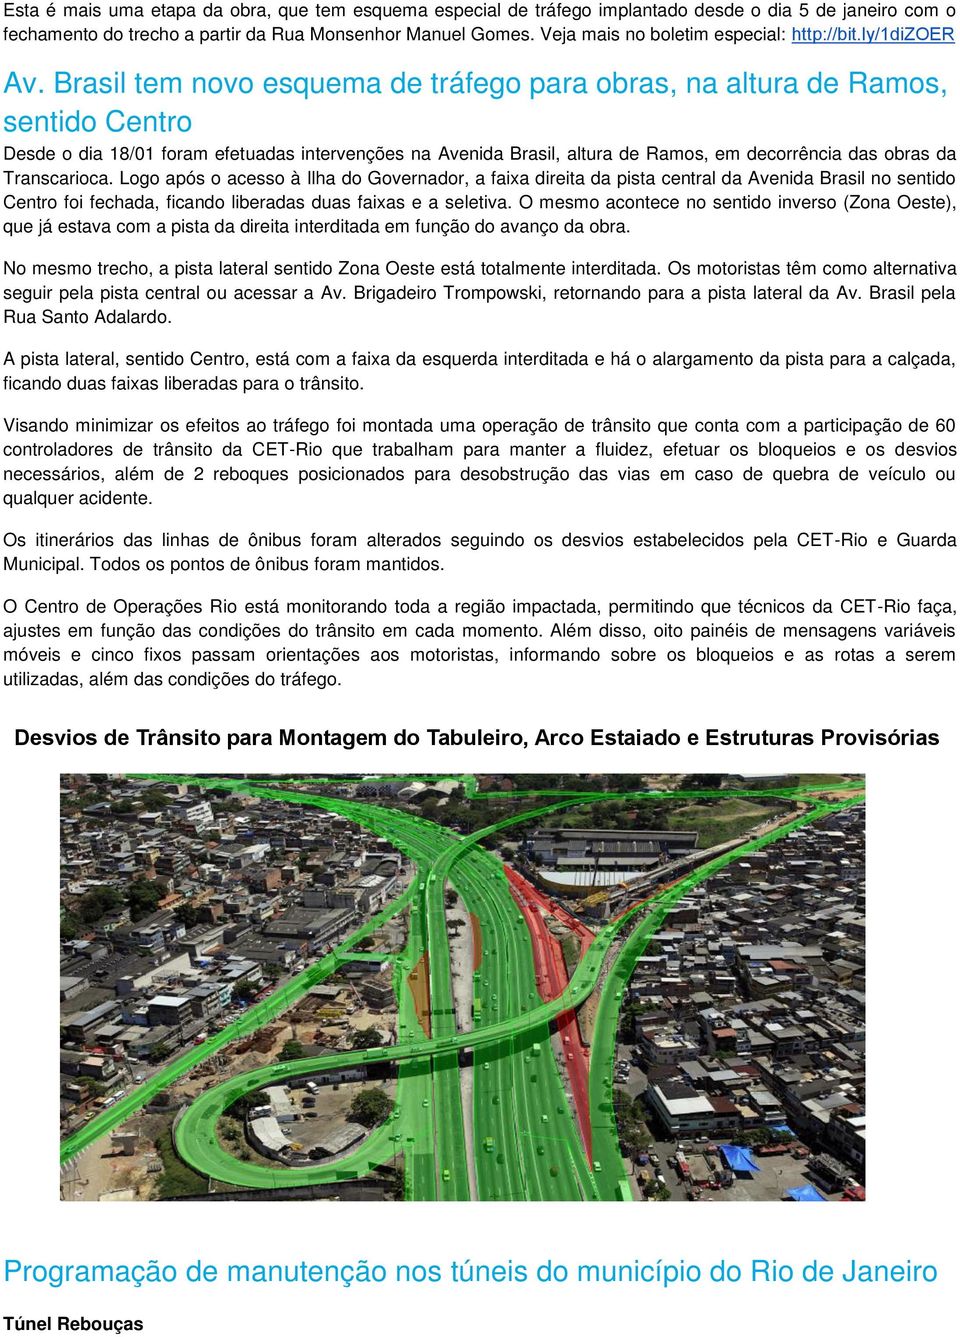 Brasil tem novo esquema de tráfego para obras, na altura de Ramos, sentido Centro Desde o dia 18/01 foram efetuadas intervenções na Avenida Brasil, altura de Ramos, em decorrência das obras da